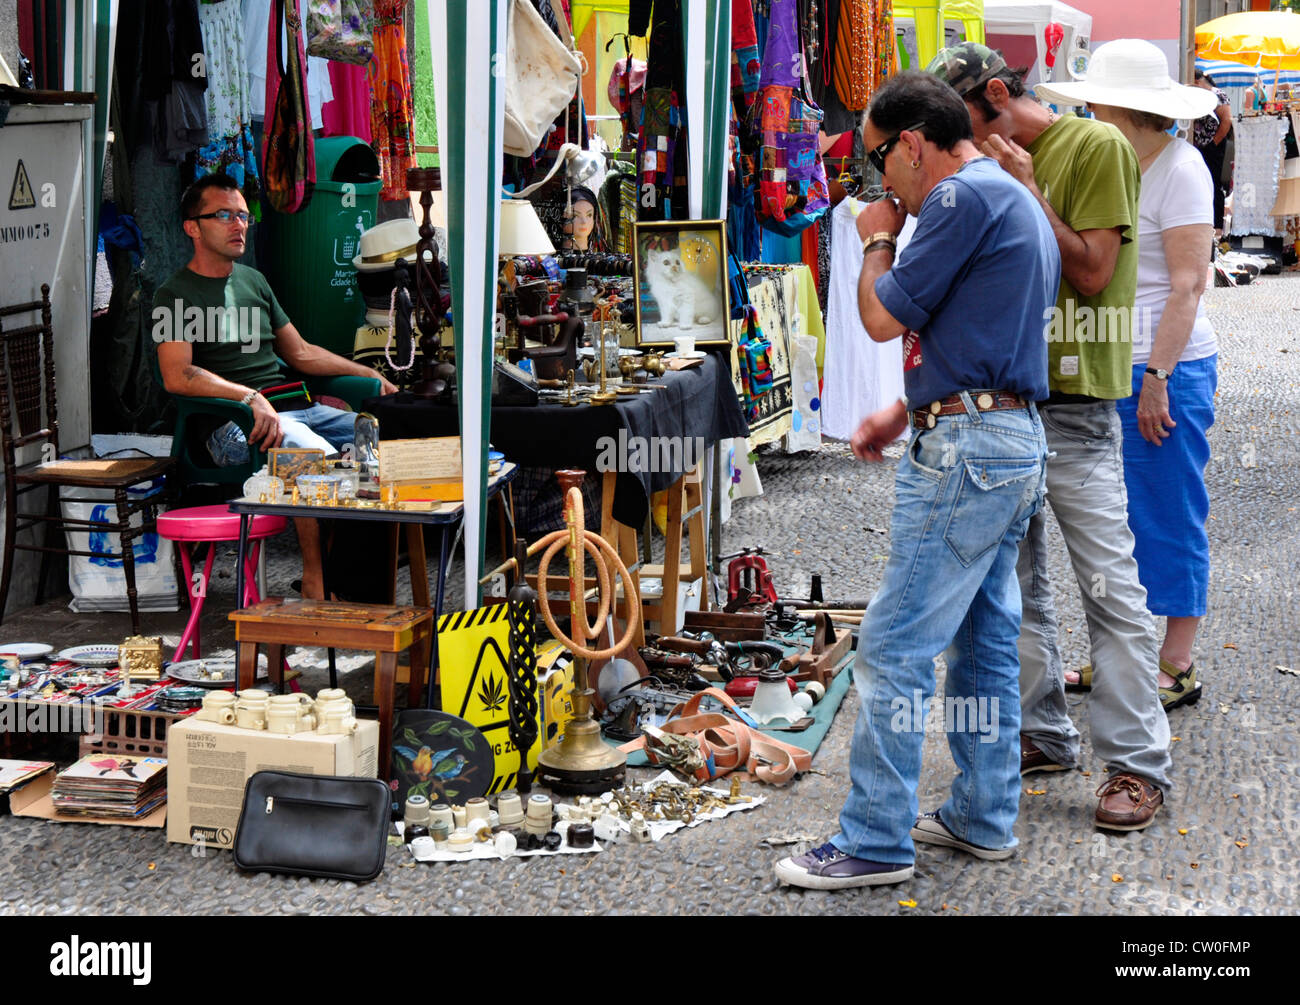 Portugal - Madeira - Funchal zona velha - calar en la calle del mercado - compradores contemplando una posible compra Foto de stock